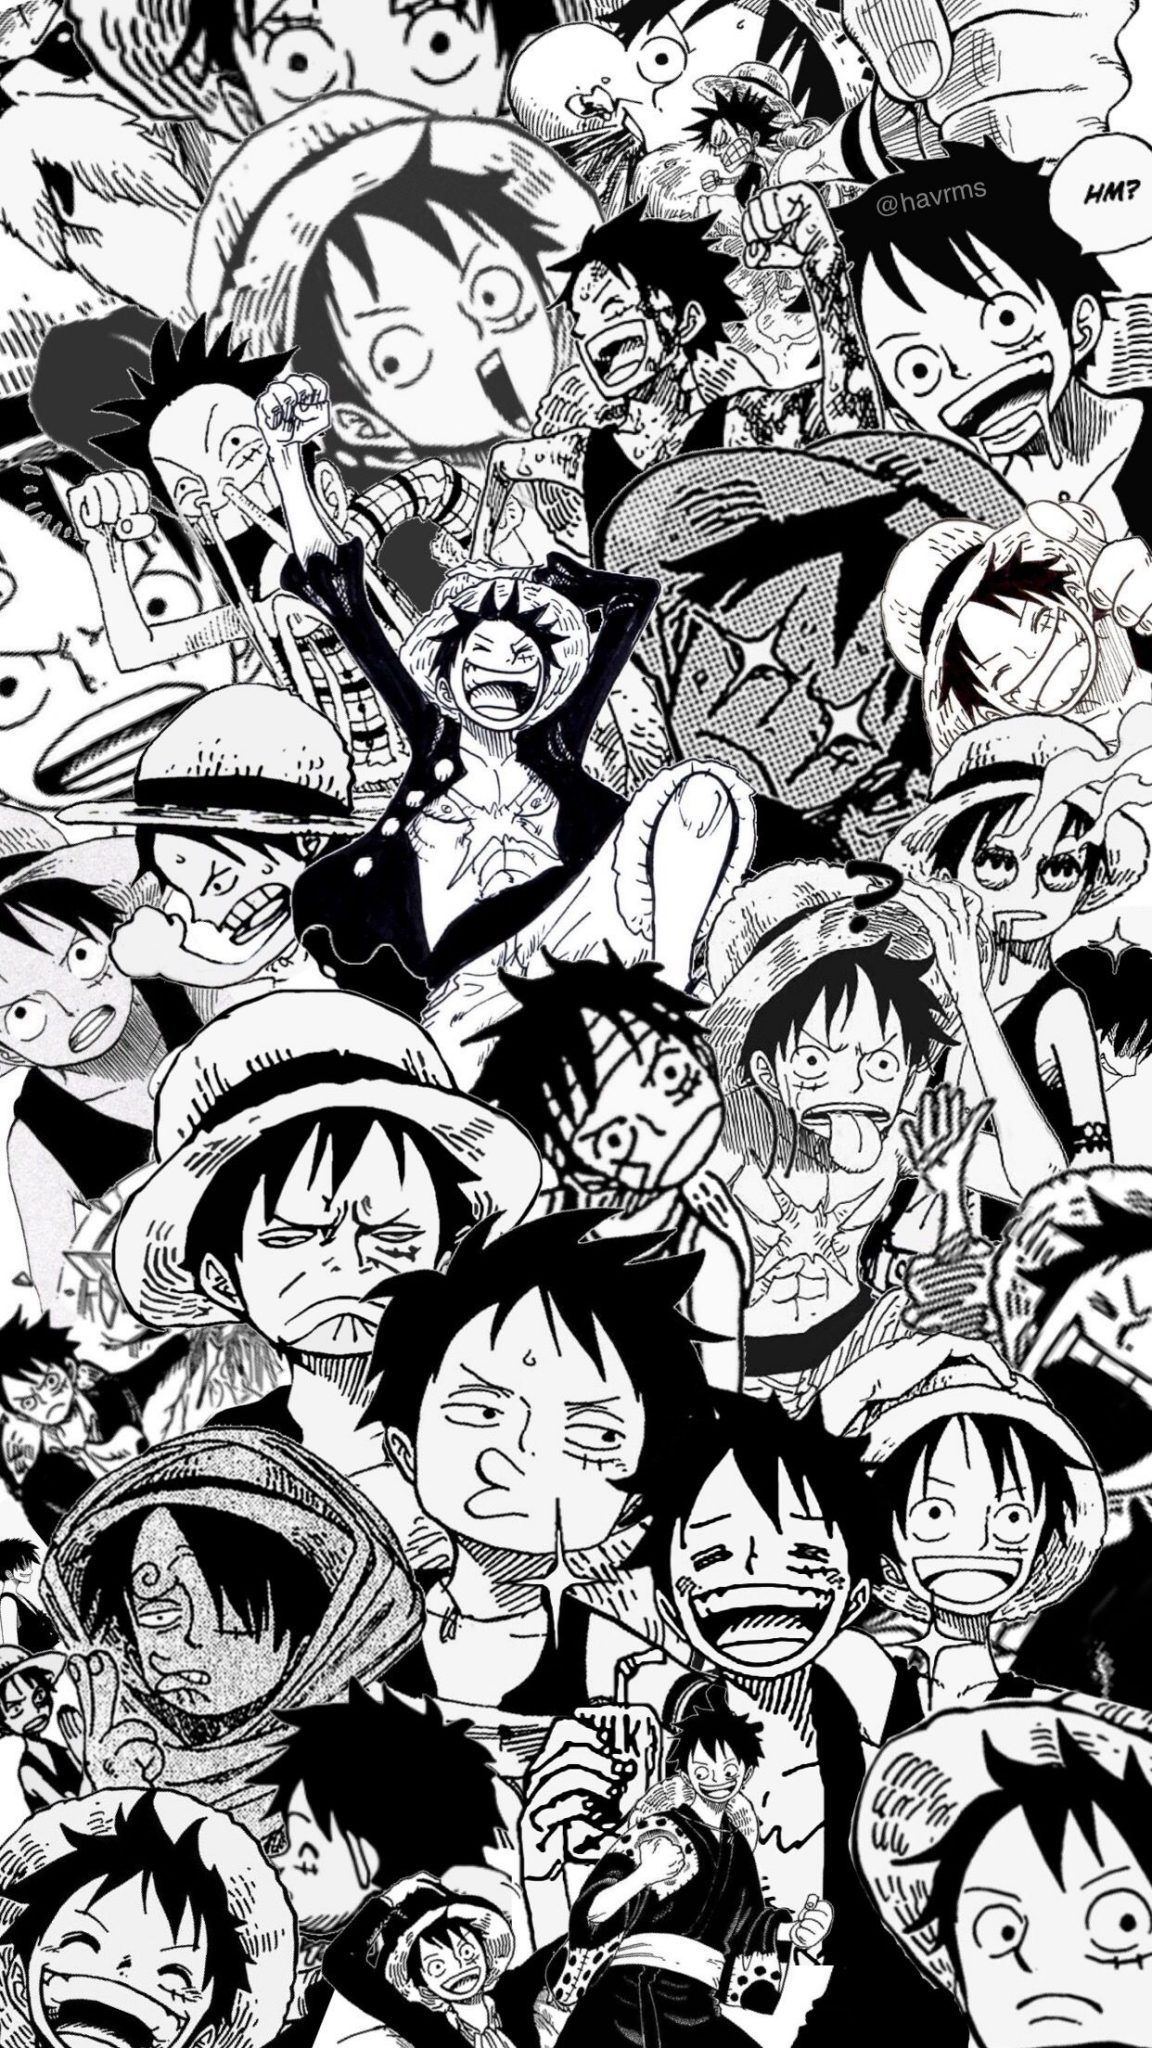 Những fan của One Piece, hãy chuẩn bị sẵn sàng cho những tấm hình đầy thú vị và tuyệt đẹp của bộ truyện anime và manga nổi tiếng nhất mọi thời đại! Hình ảnh chất lượng cao, đầy màu sắc và tinh tế sẽ giúp bạn tận hưởng và cảm nhận trọn vẹn thế giới One Piece. Bấm vào và khám phá ngay.